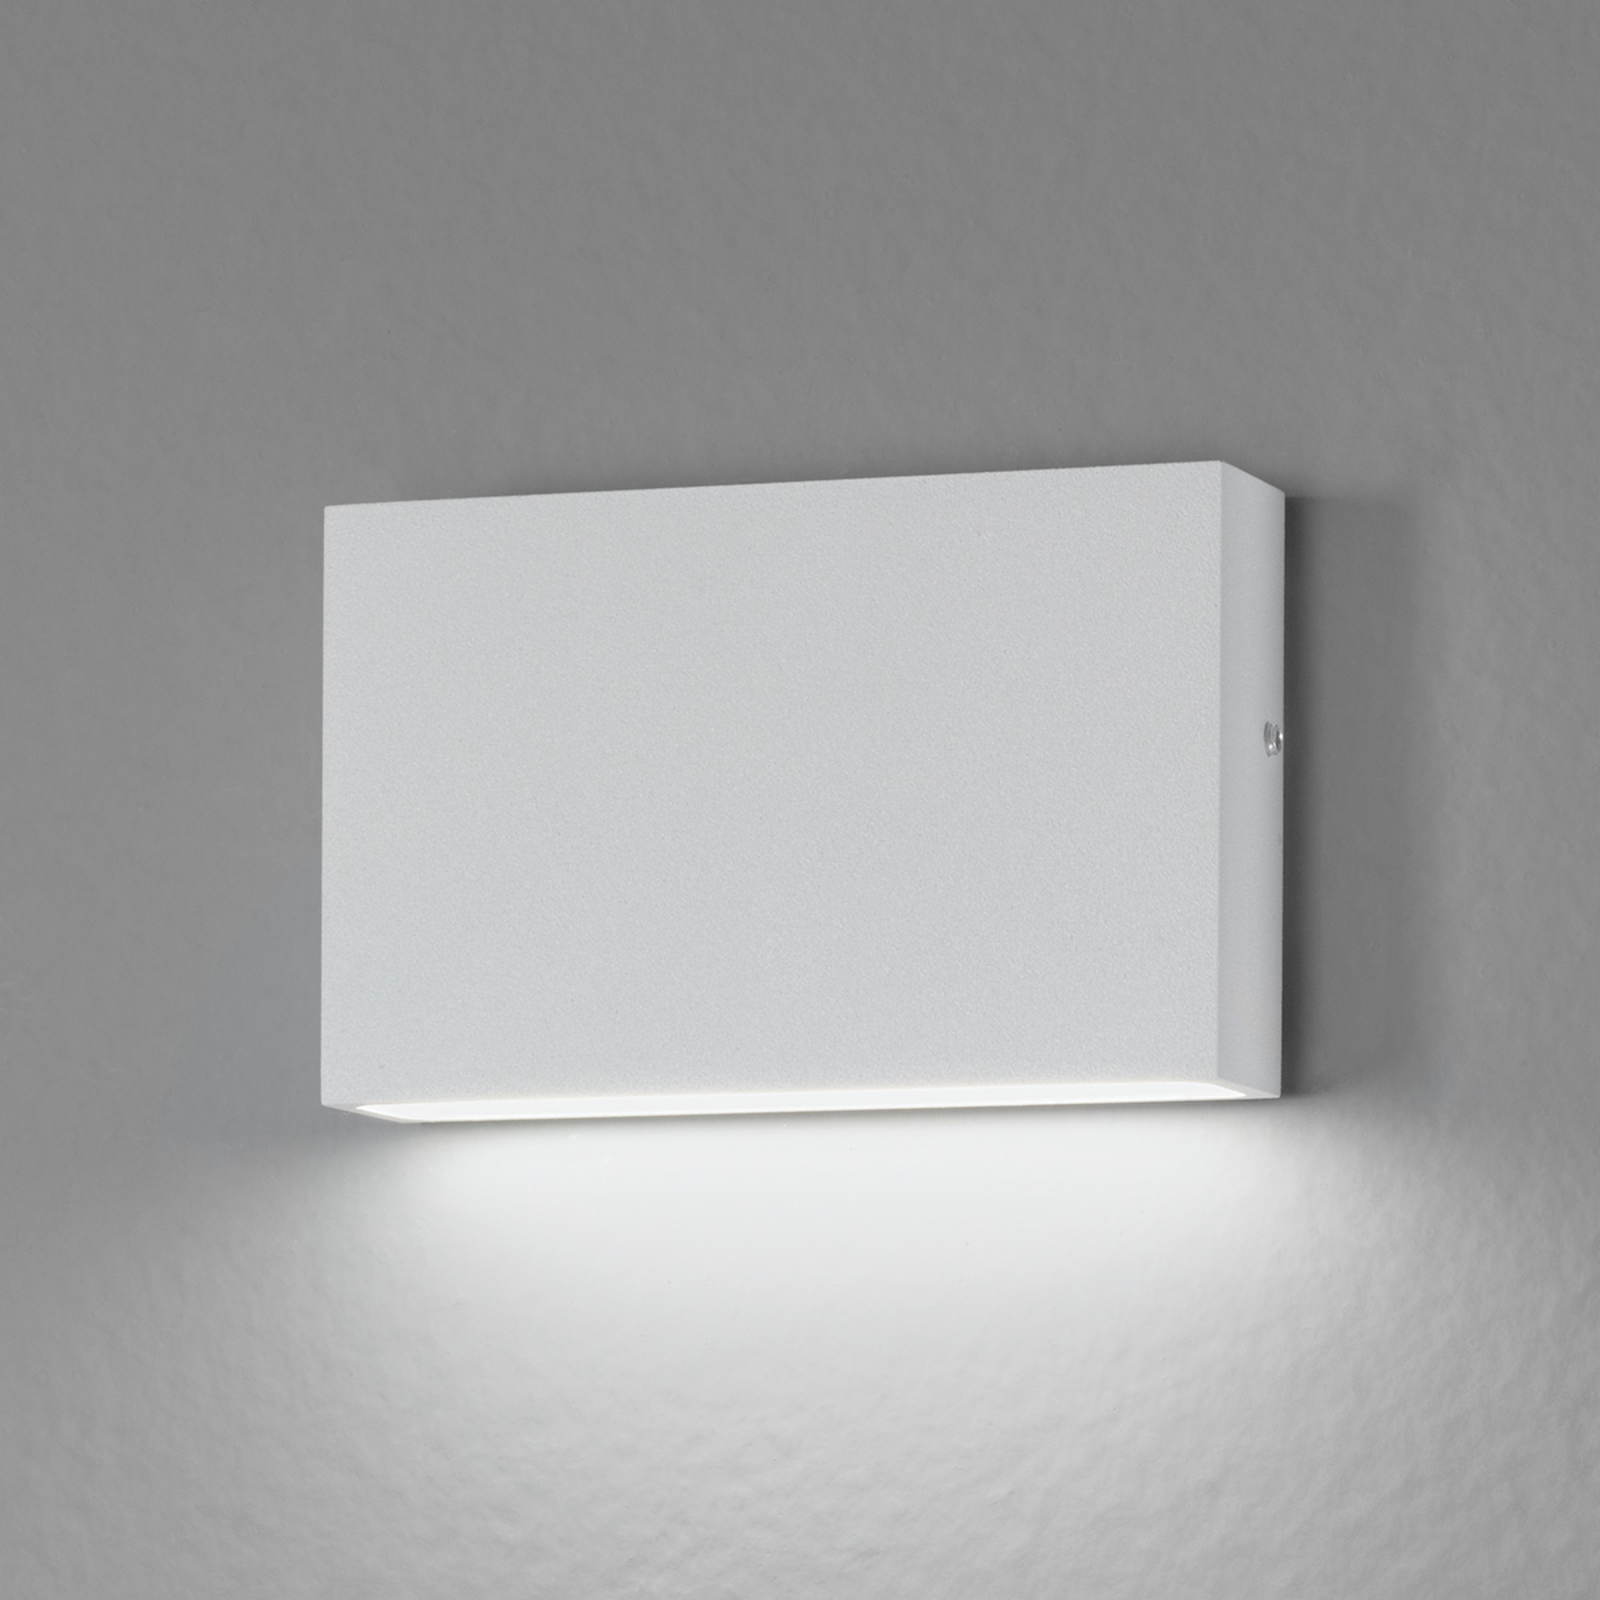 Vnitřní i venkovní -LED nástěnné světlo Flatbox